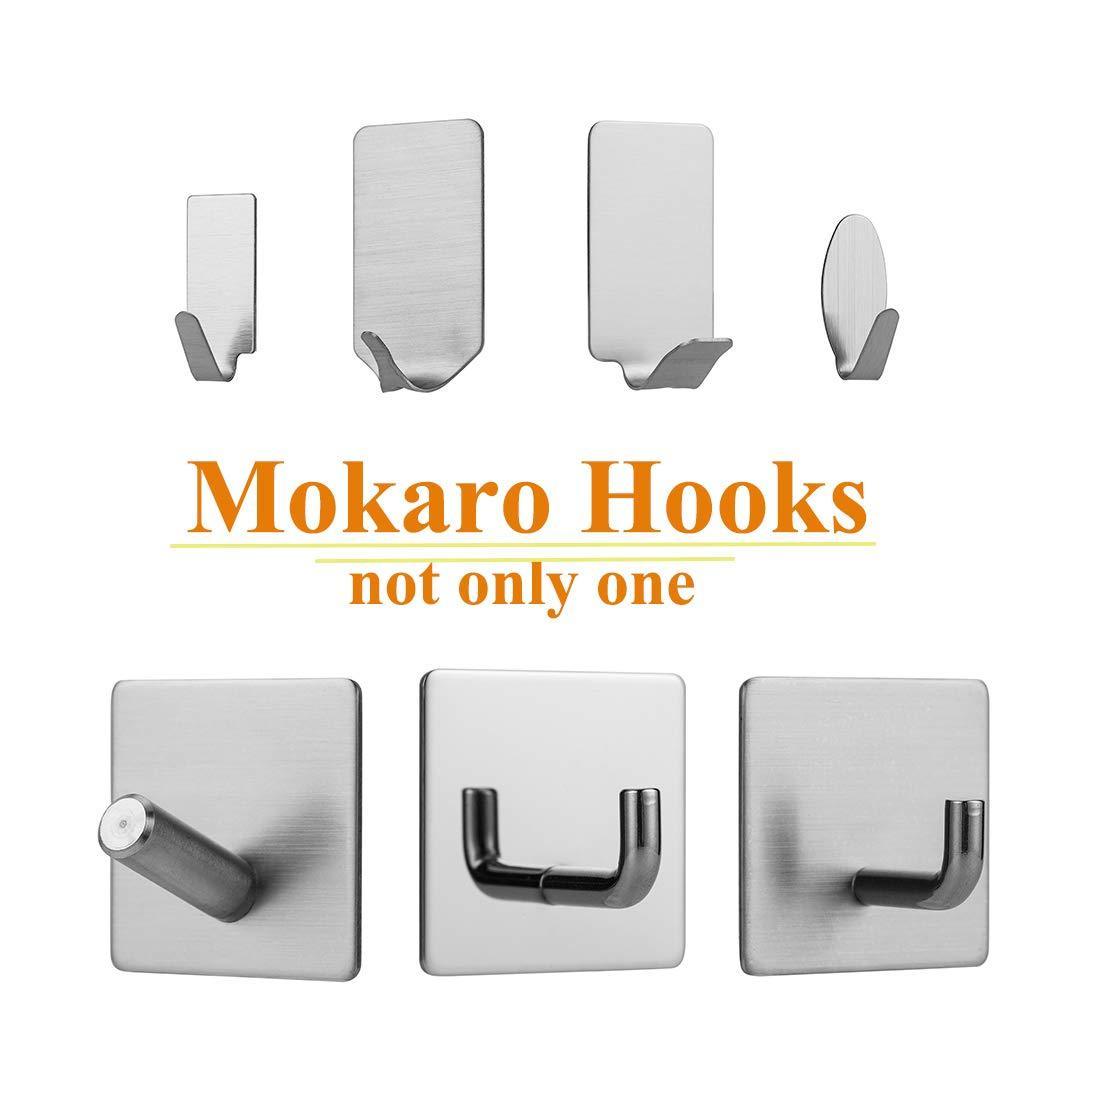 Buy now mokaro key hooks adhesive brushed stainless steel mini sticky hooks 24 hooks oval